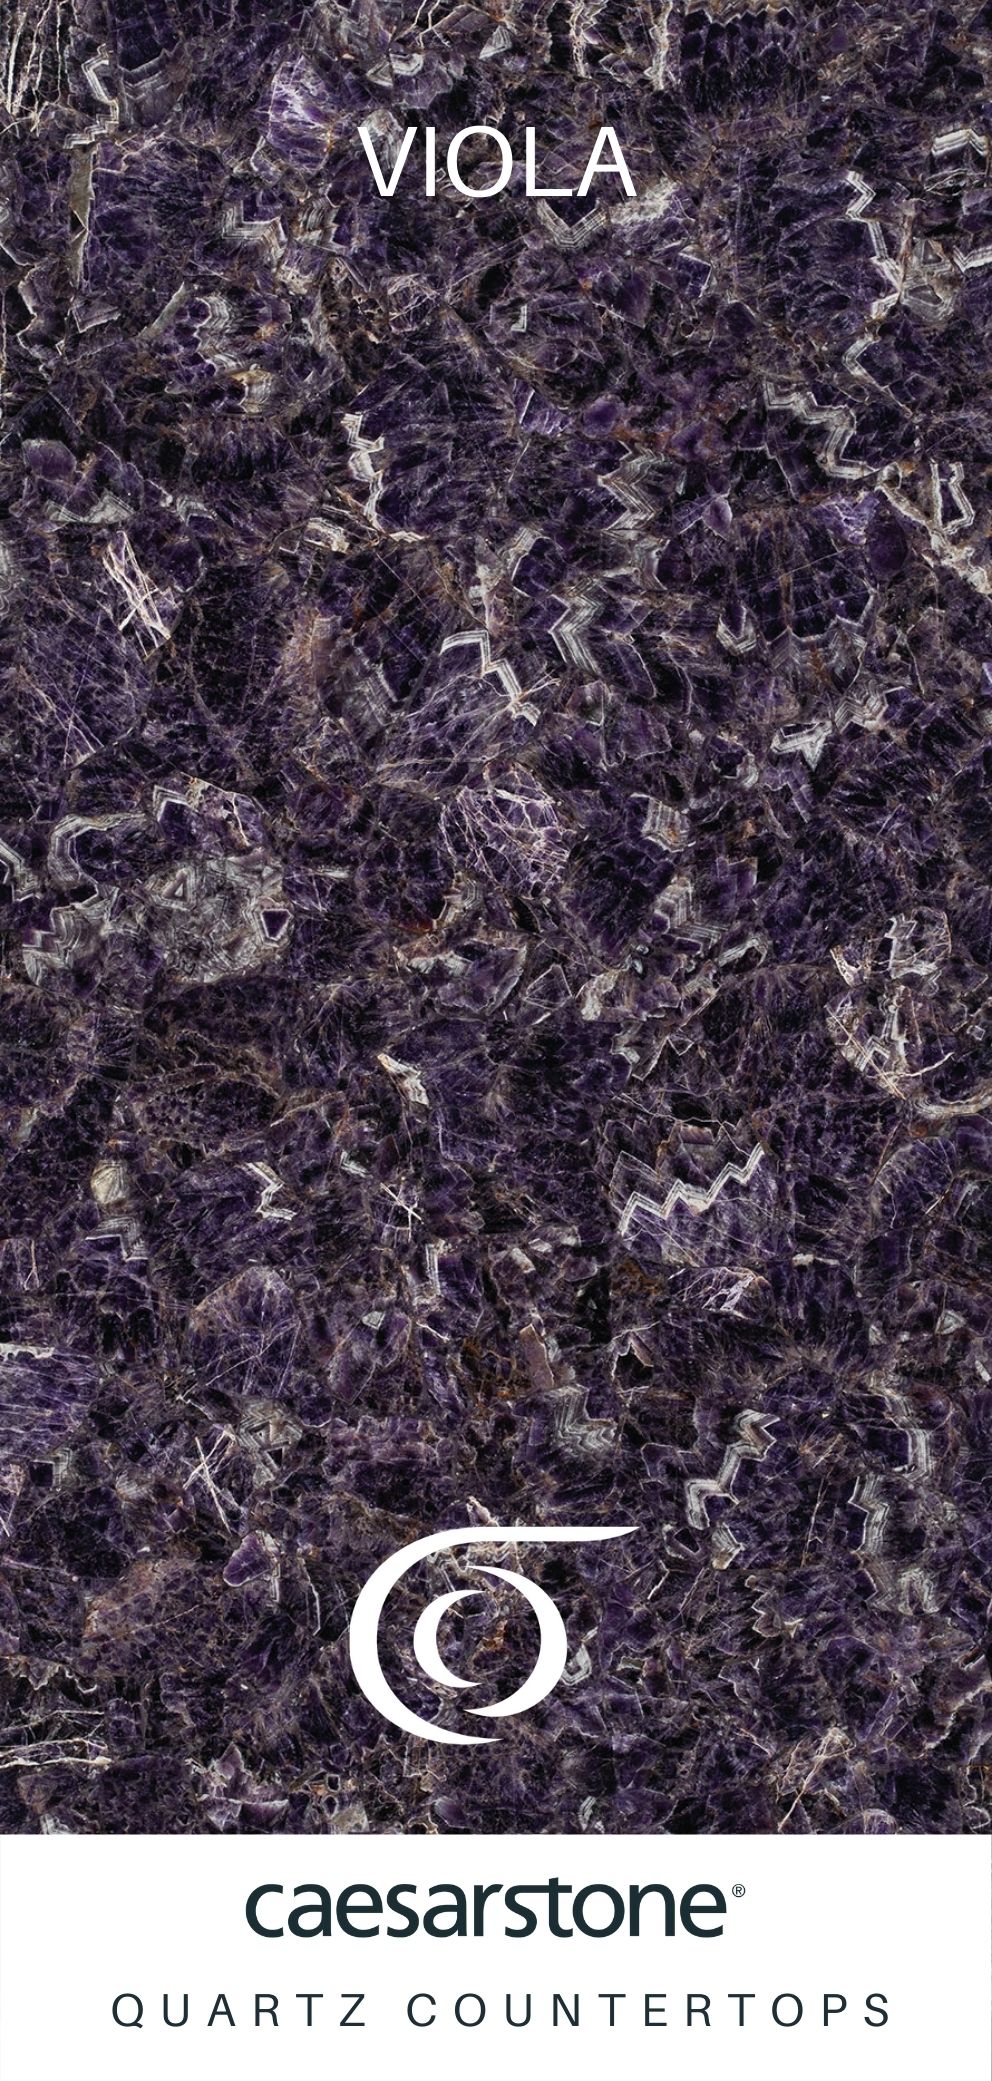 Caesarstone Quartz Countertops Viola